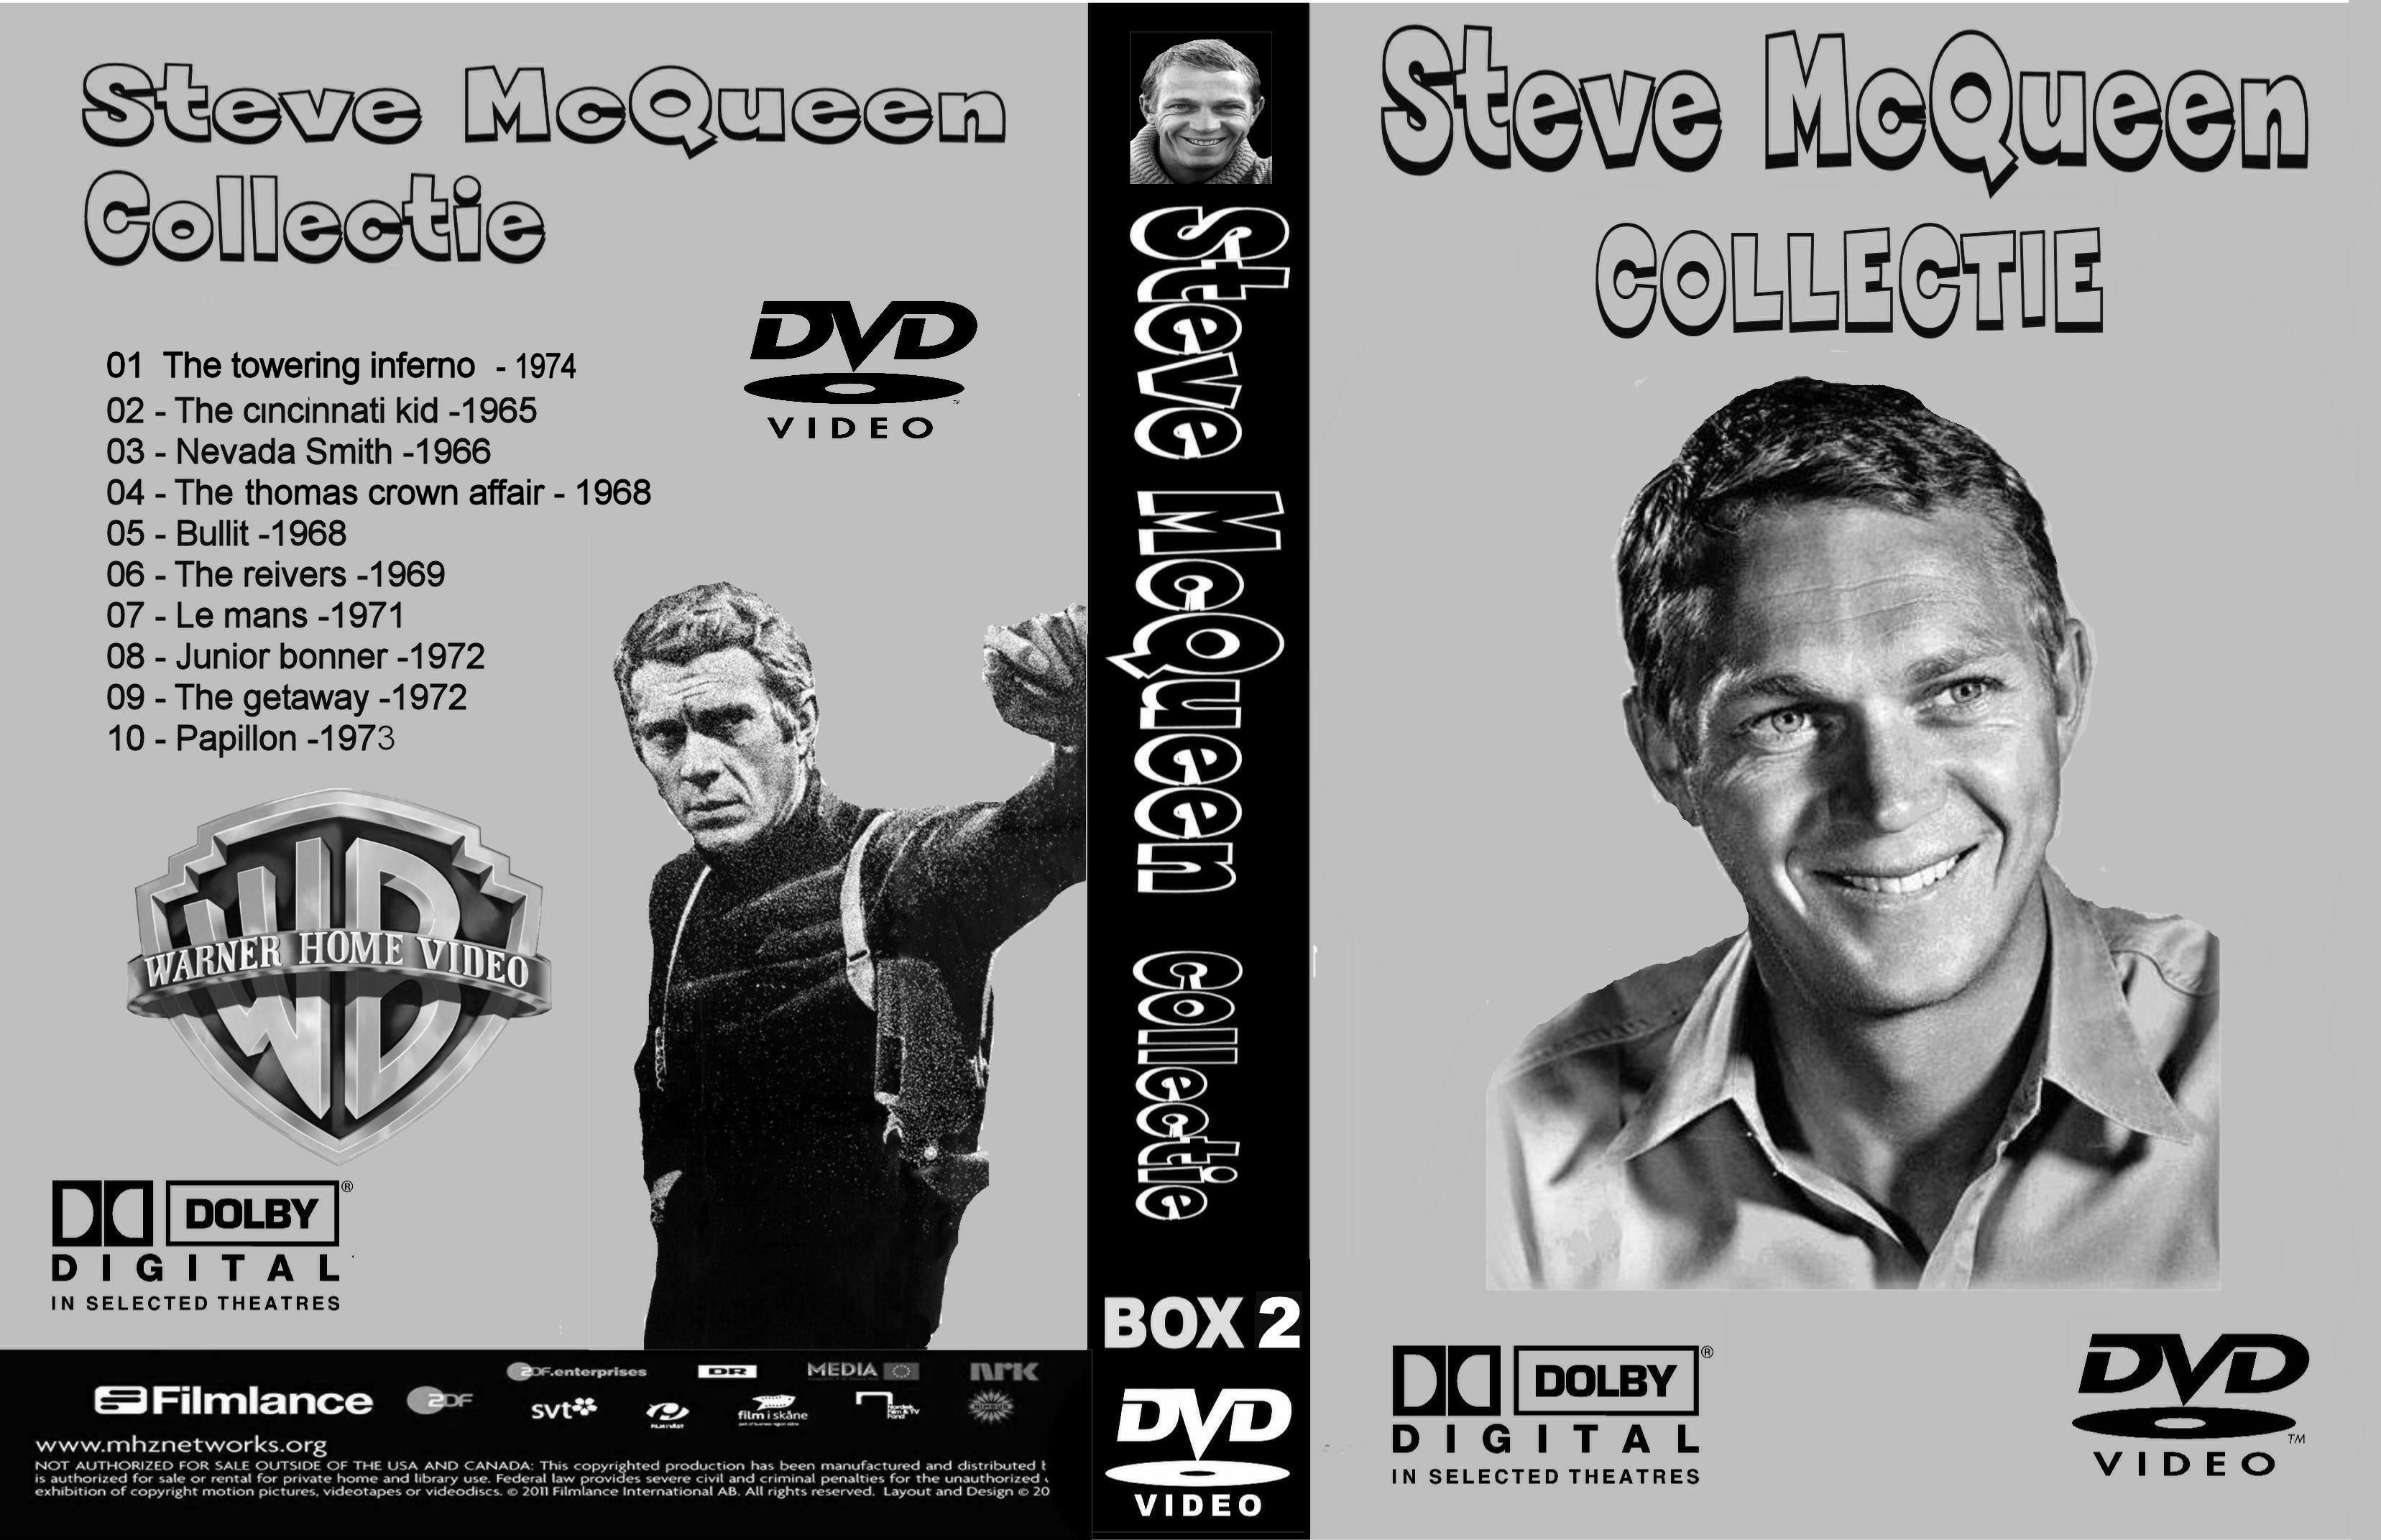 Steve McQueen Collectie box 2 DvD 8 van10